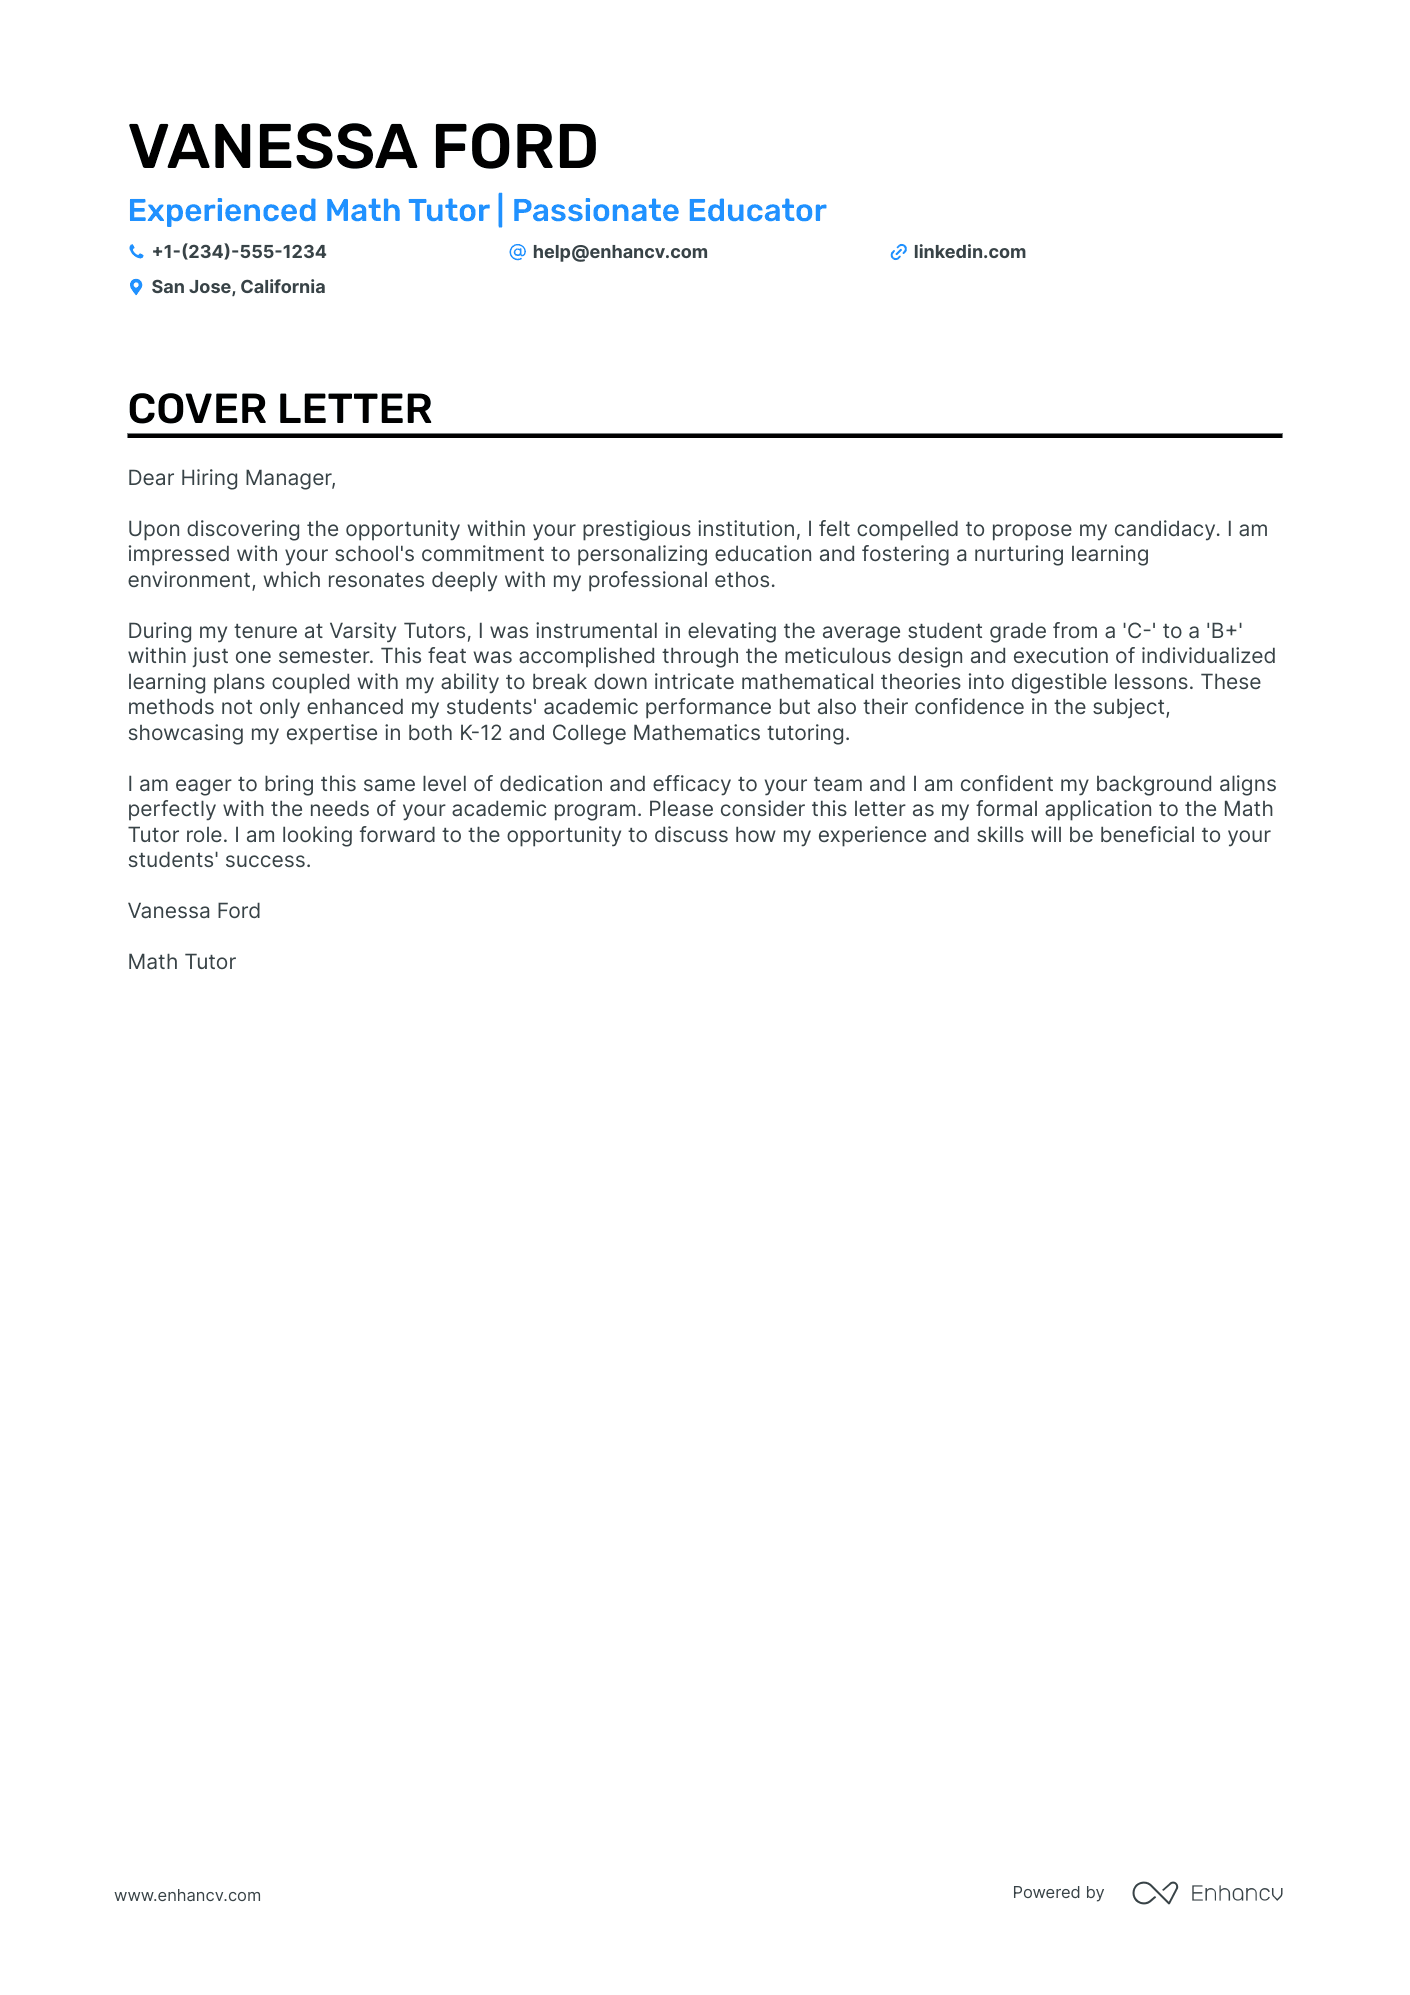 Math Tutor cover letter